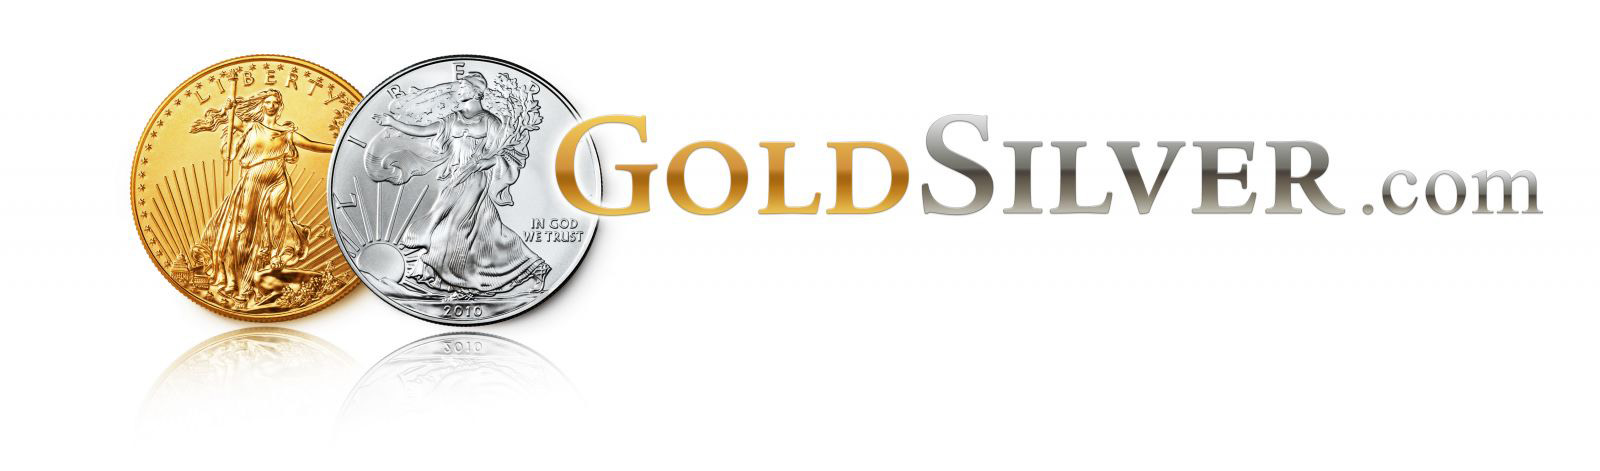 logo-goldsilver.jpg